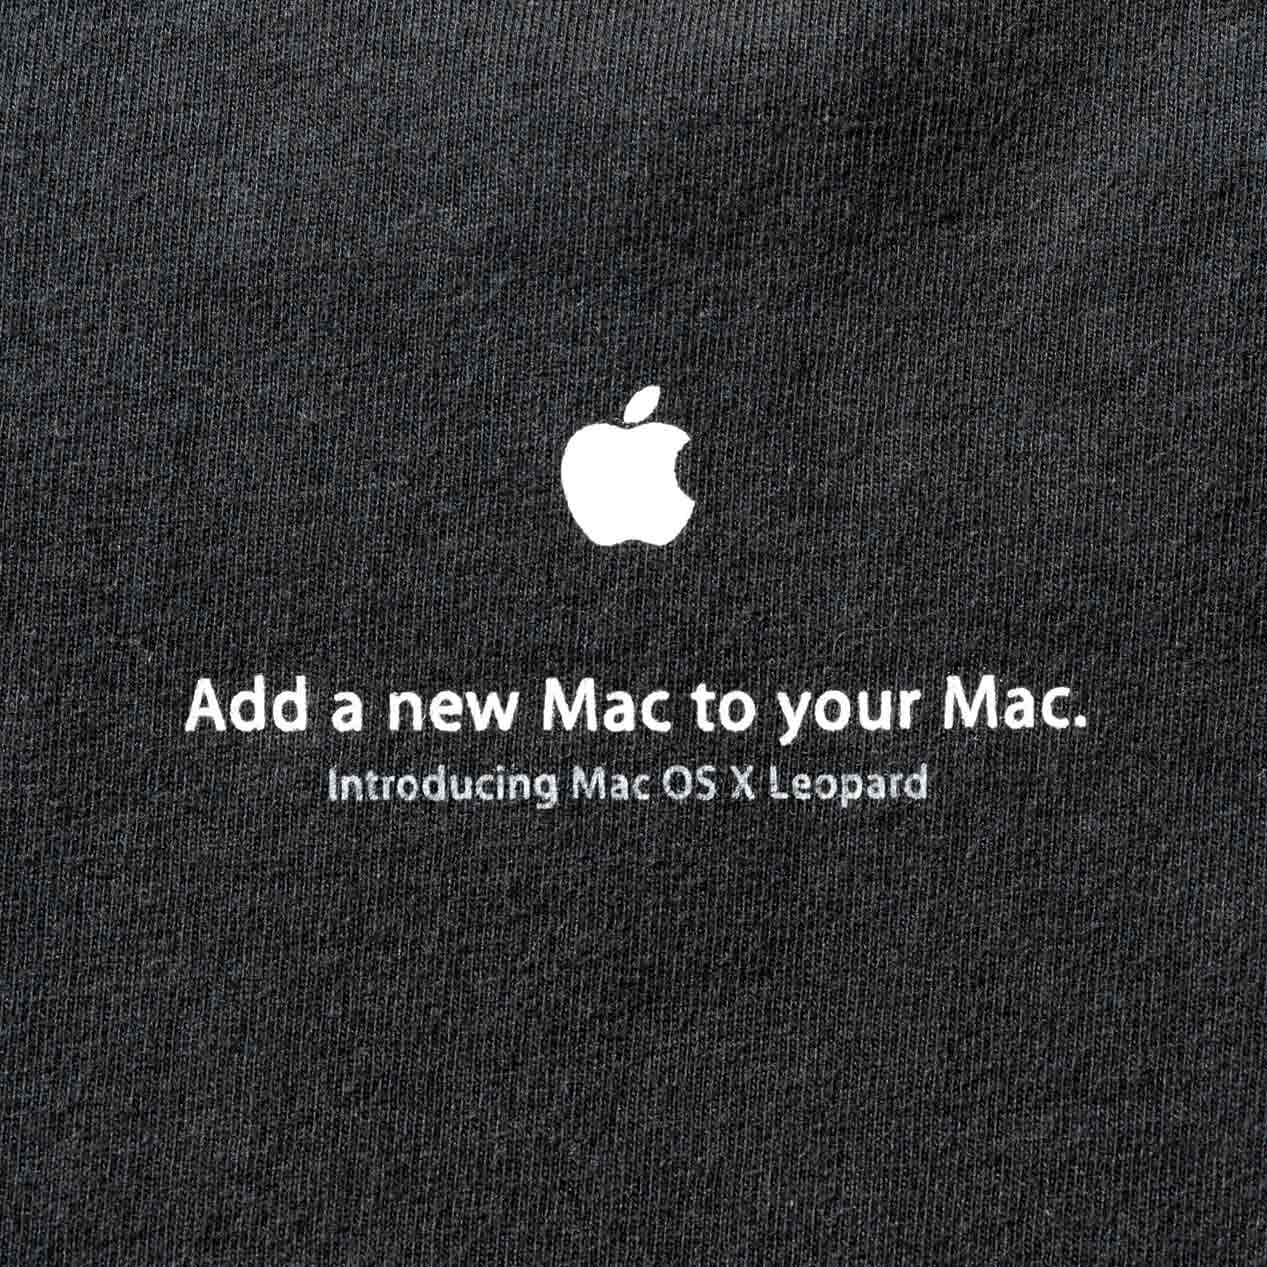 POST JUNK / 00's APPLE “MAC OS X LEOPARD” プロモTシャツ [XL]